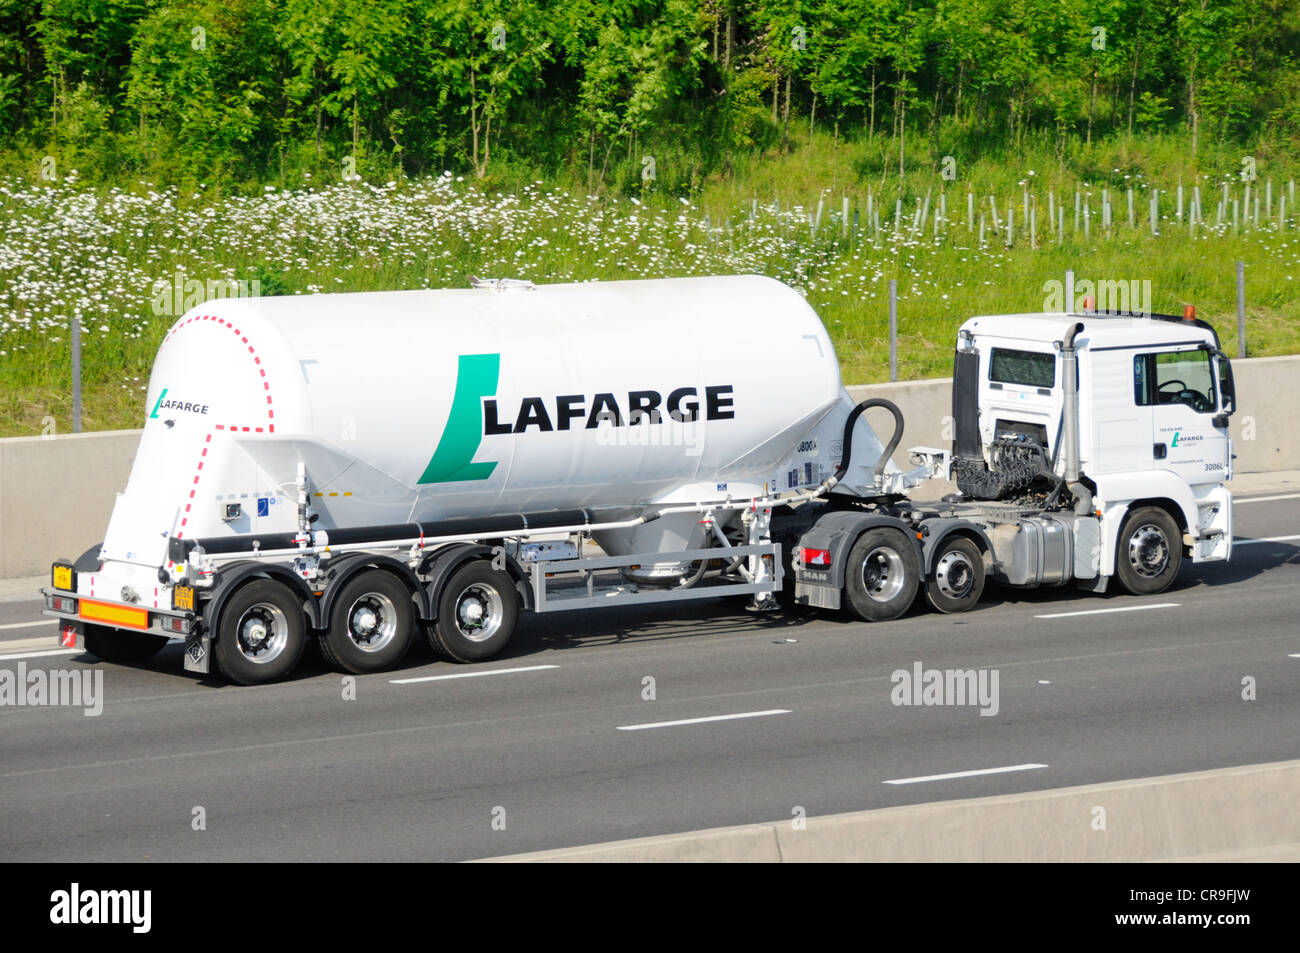 Vue latérale porte-poudre de ciment en vrac LaFarge dans une remorque de camion-citerne articulée tractée par camion hgv blanc roulant le long de l'autoroute M25 Essex Angleterre Royaume-Uni Banque D'Images